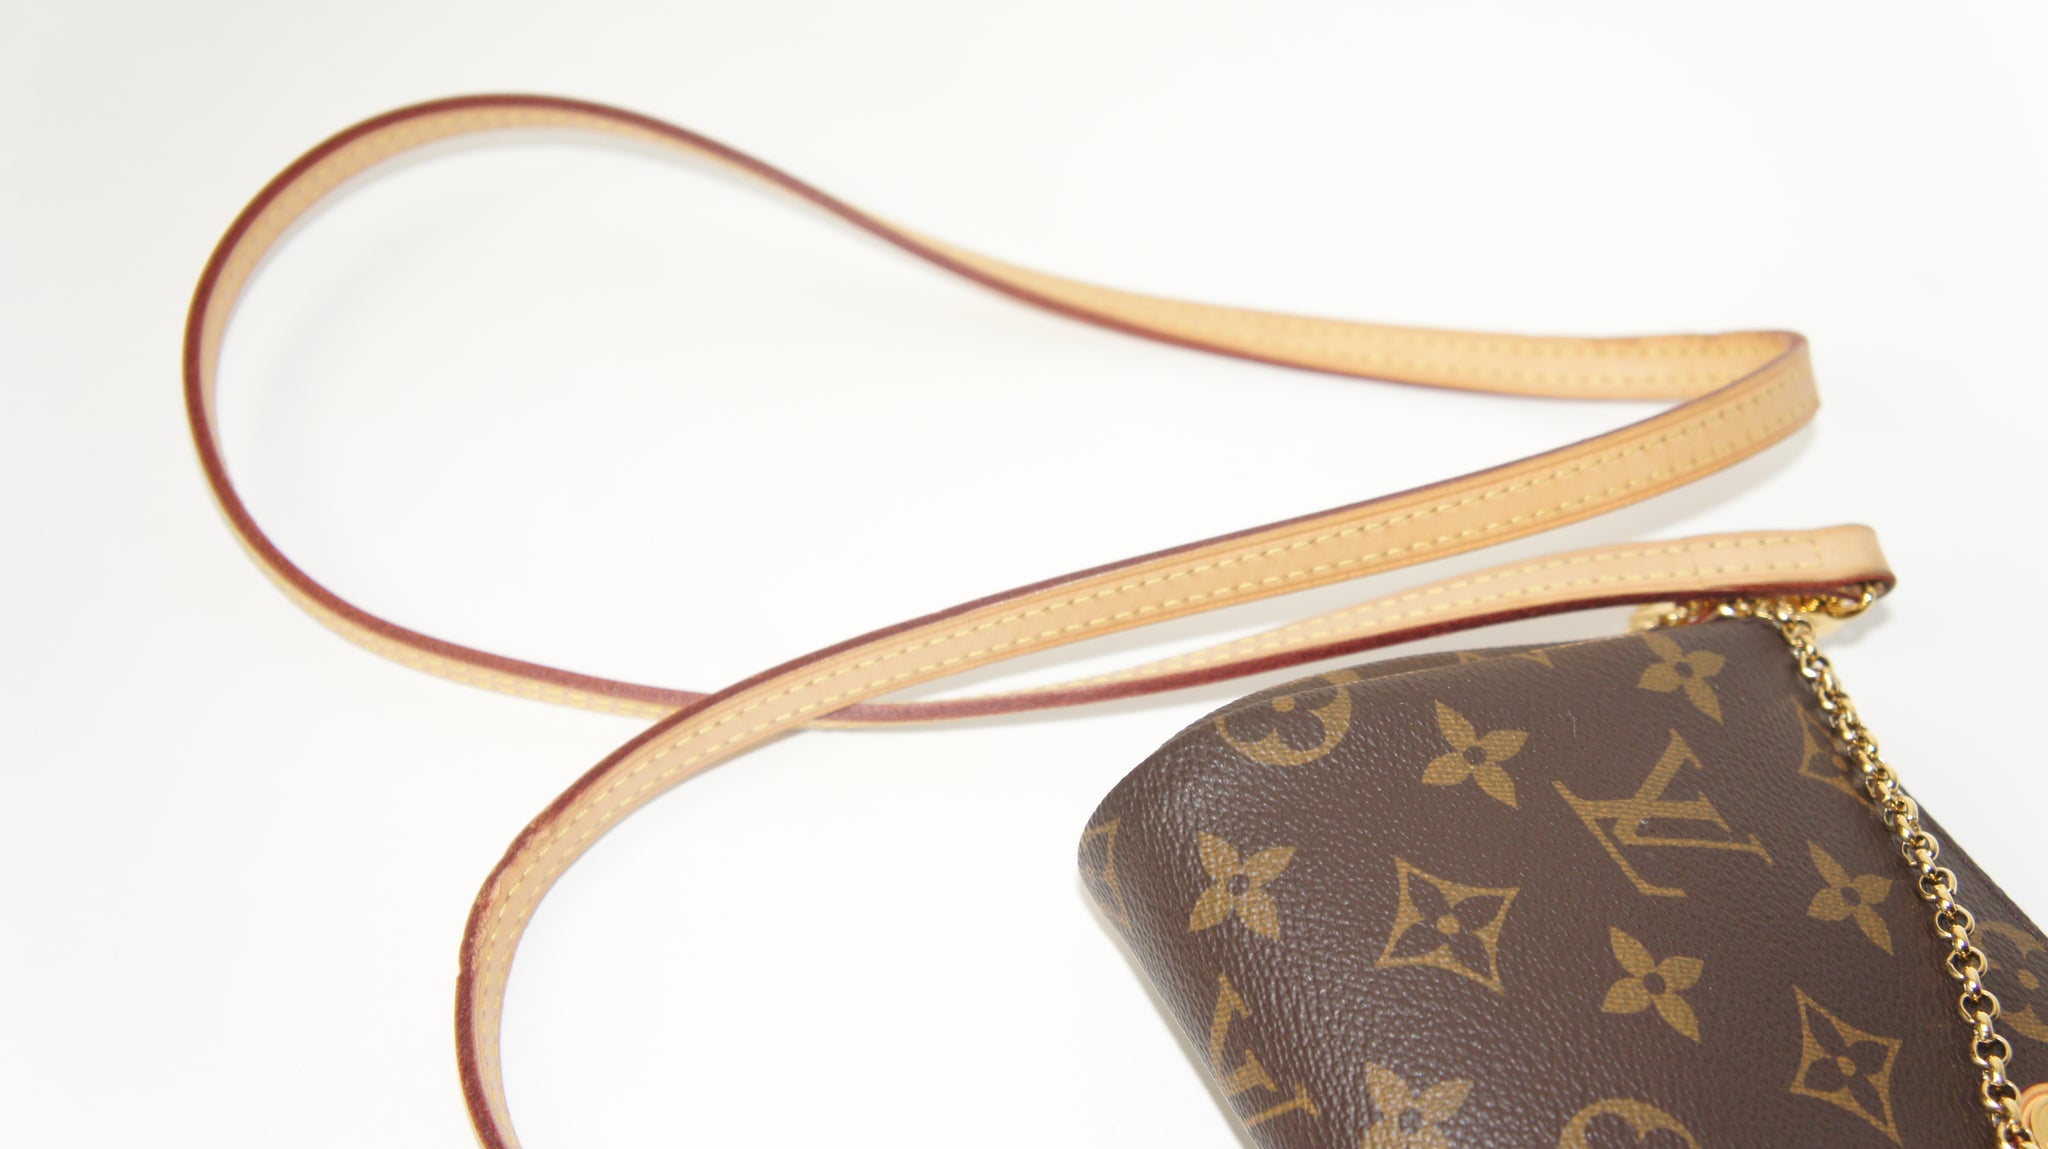 Louis Vuitton Eva Clutch Monogram Review + What Fits Inside? 